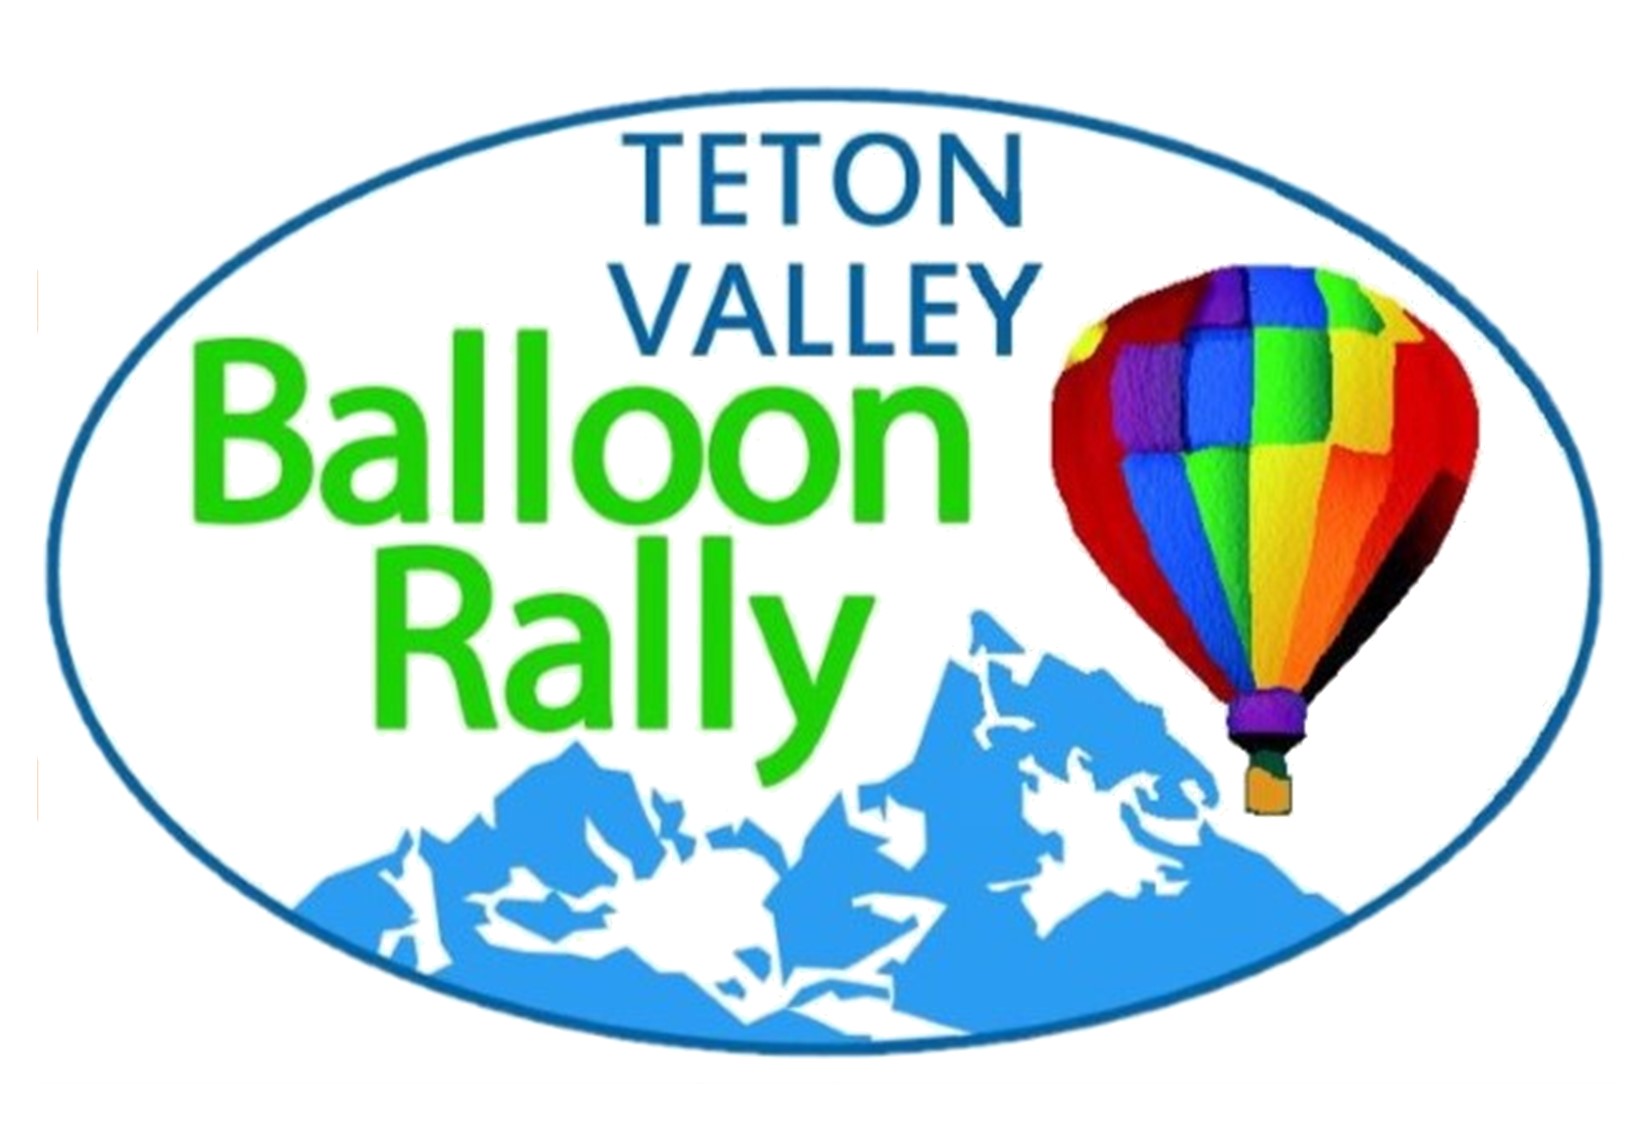 Teton Valley Balloon Rally logo